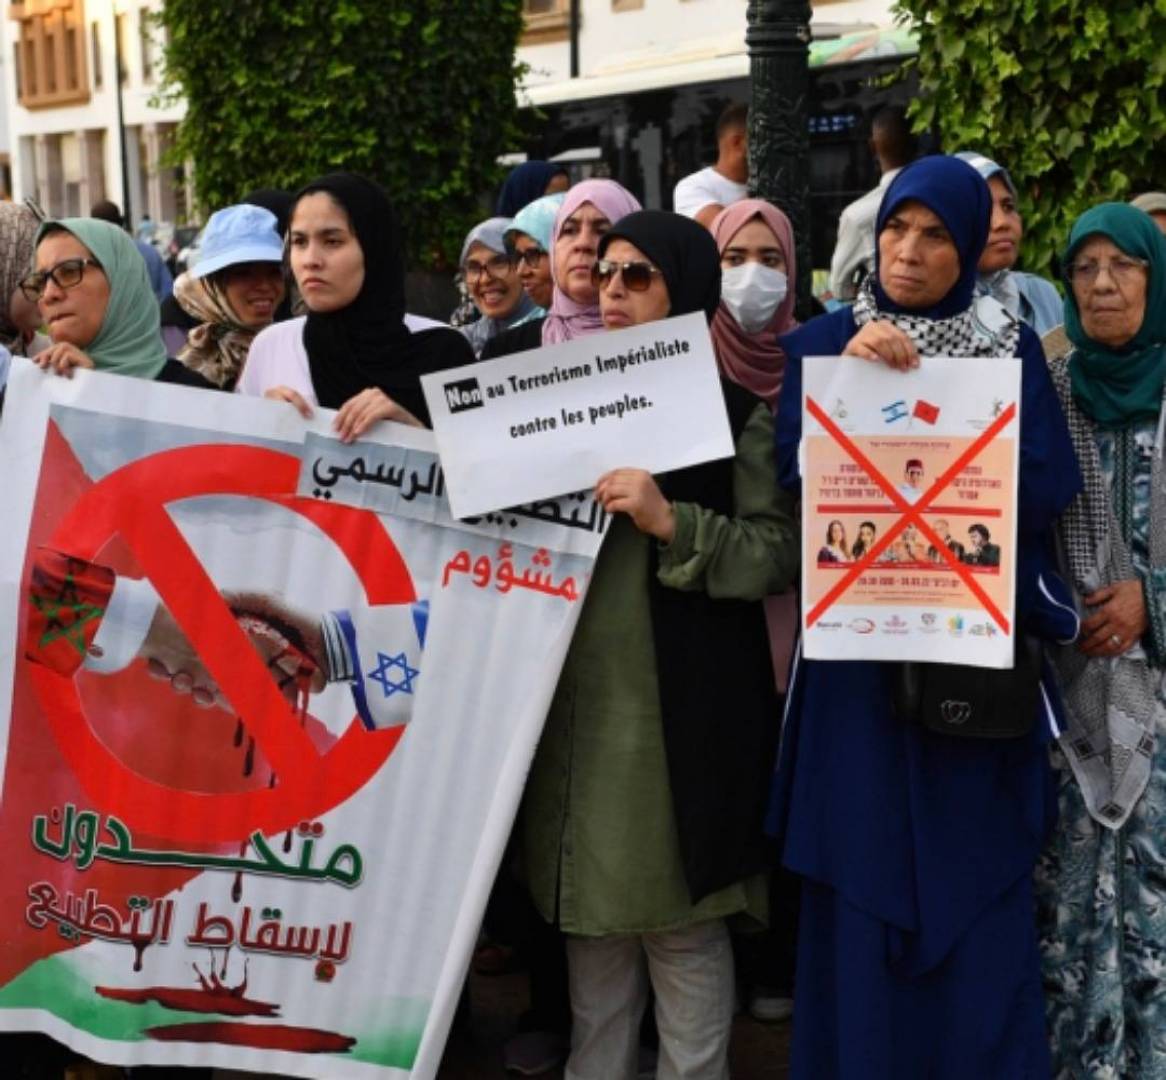 بعد فضيحة تحرش سفير الكيان الإسرائيلي..عشرات النشطاء يتظاهرون أمام برلمان المغرب ويطالبوا بوقف التطبيع